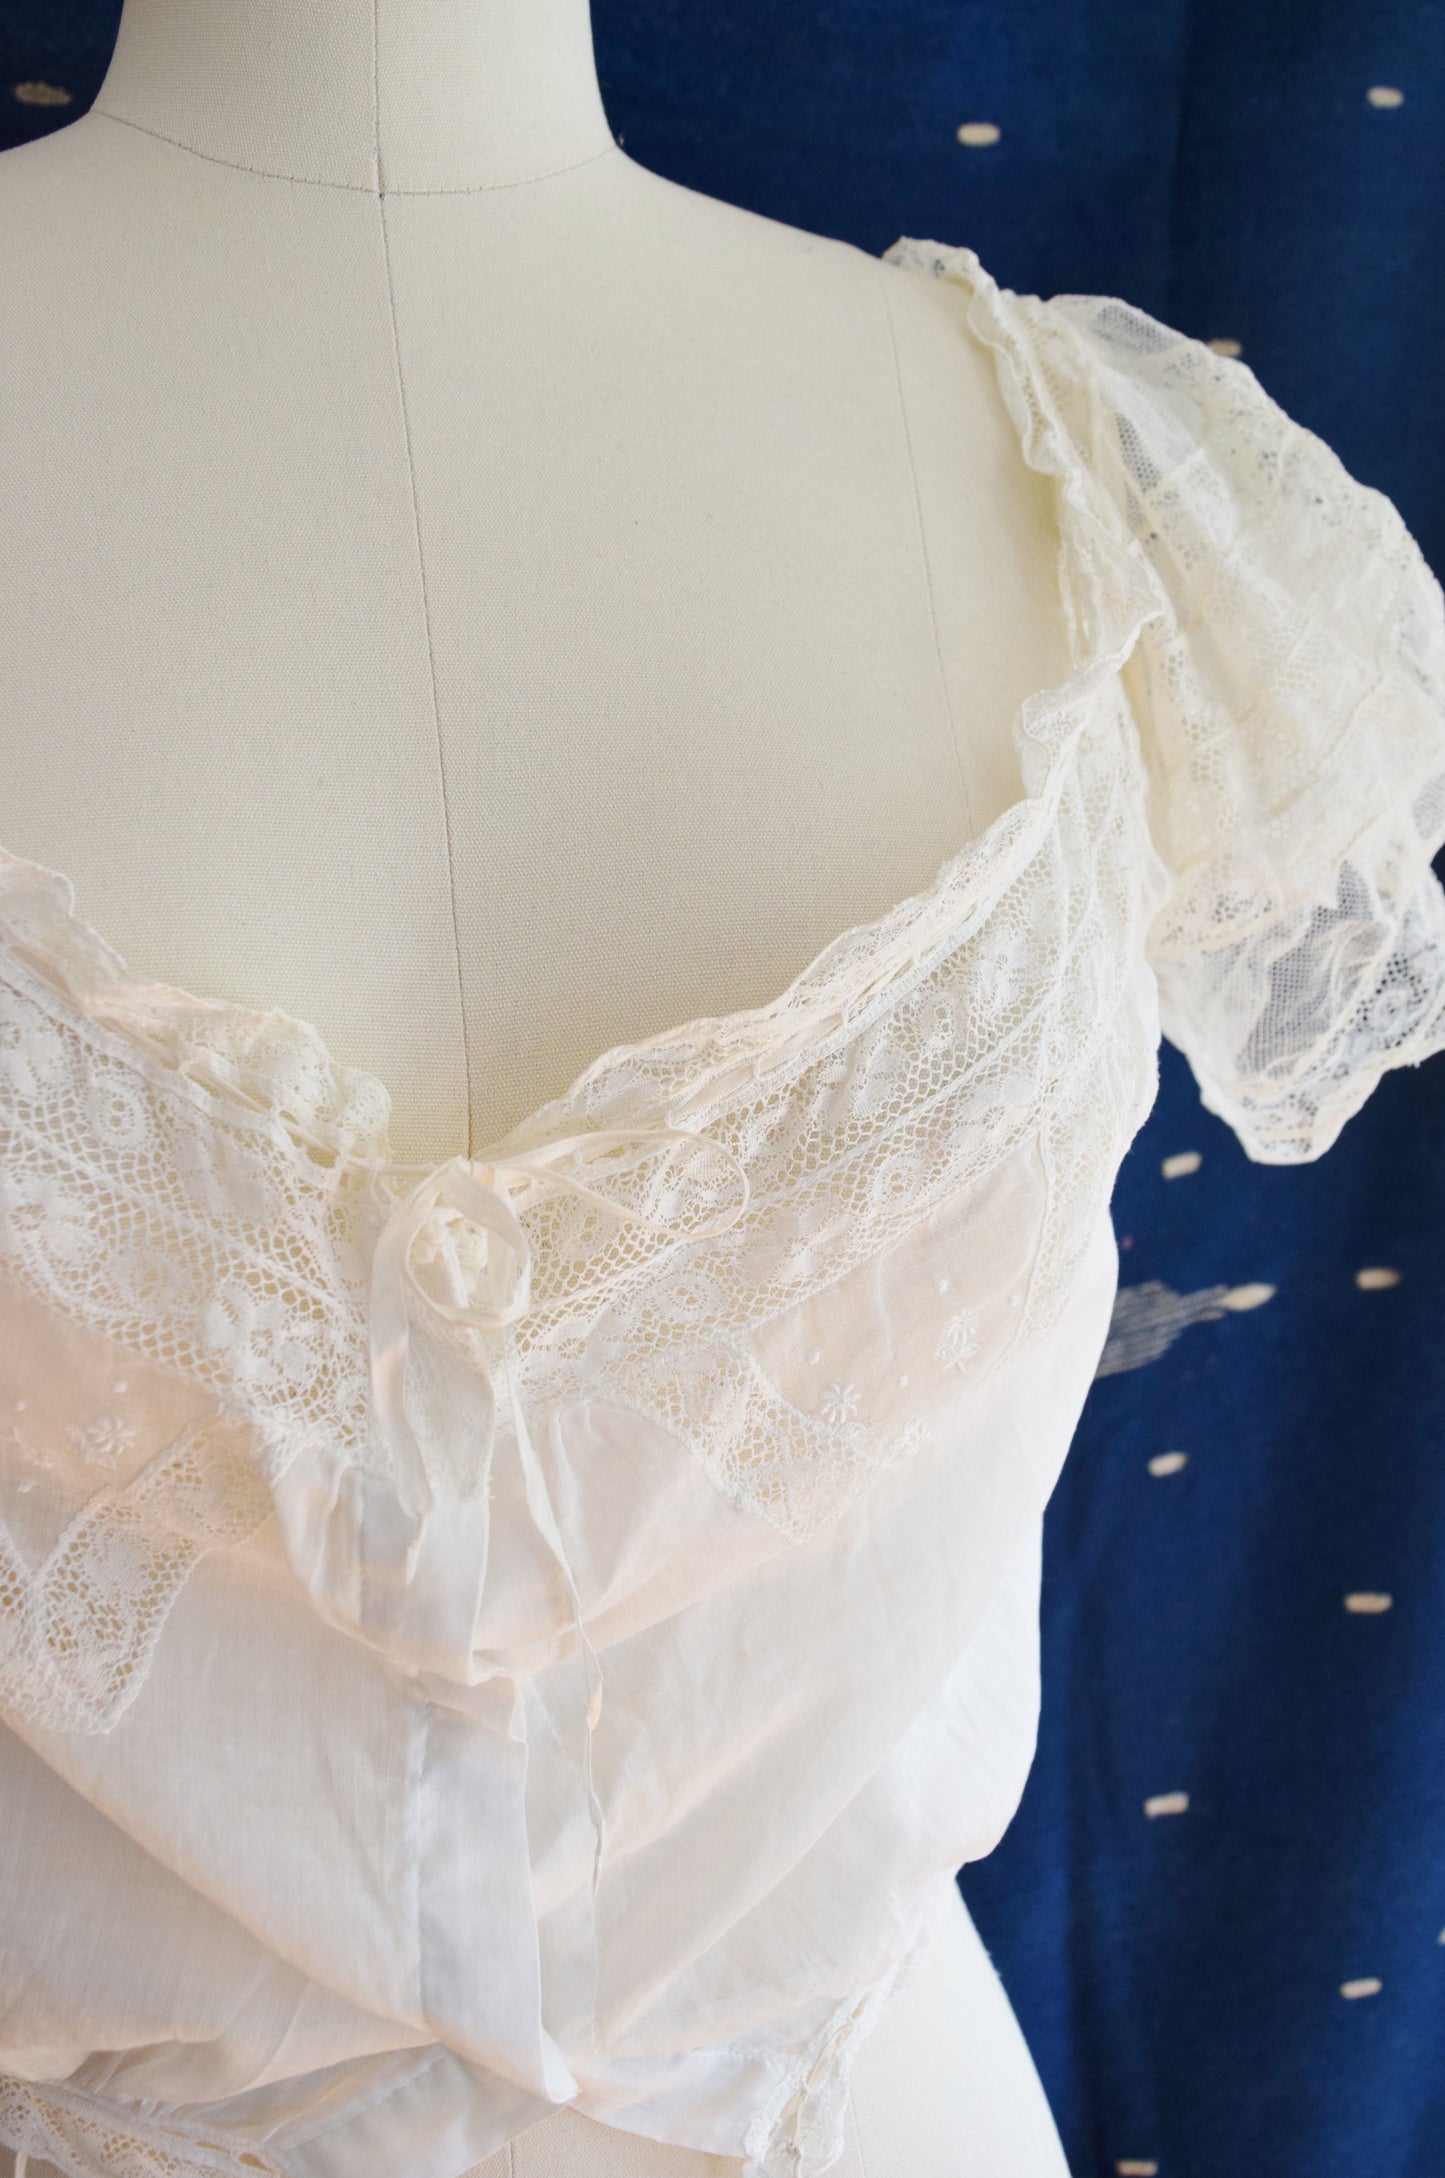 Antique Cotton and Lace Blouse | Corset Cover